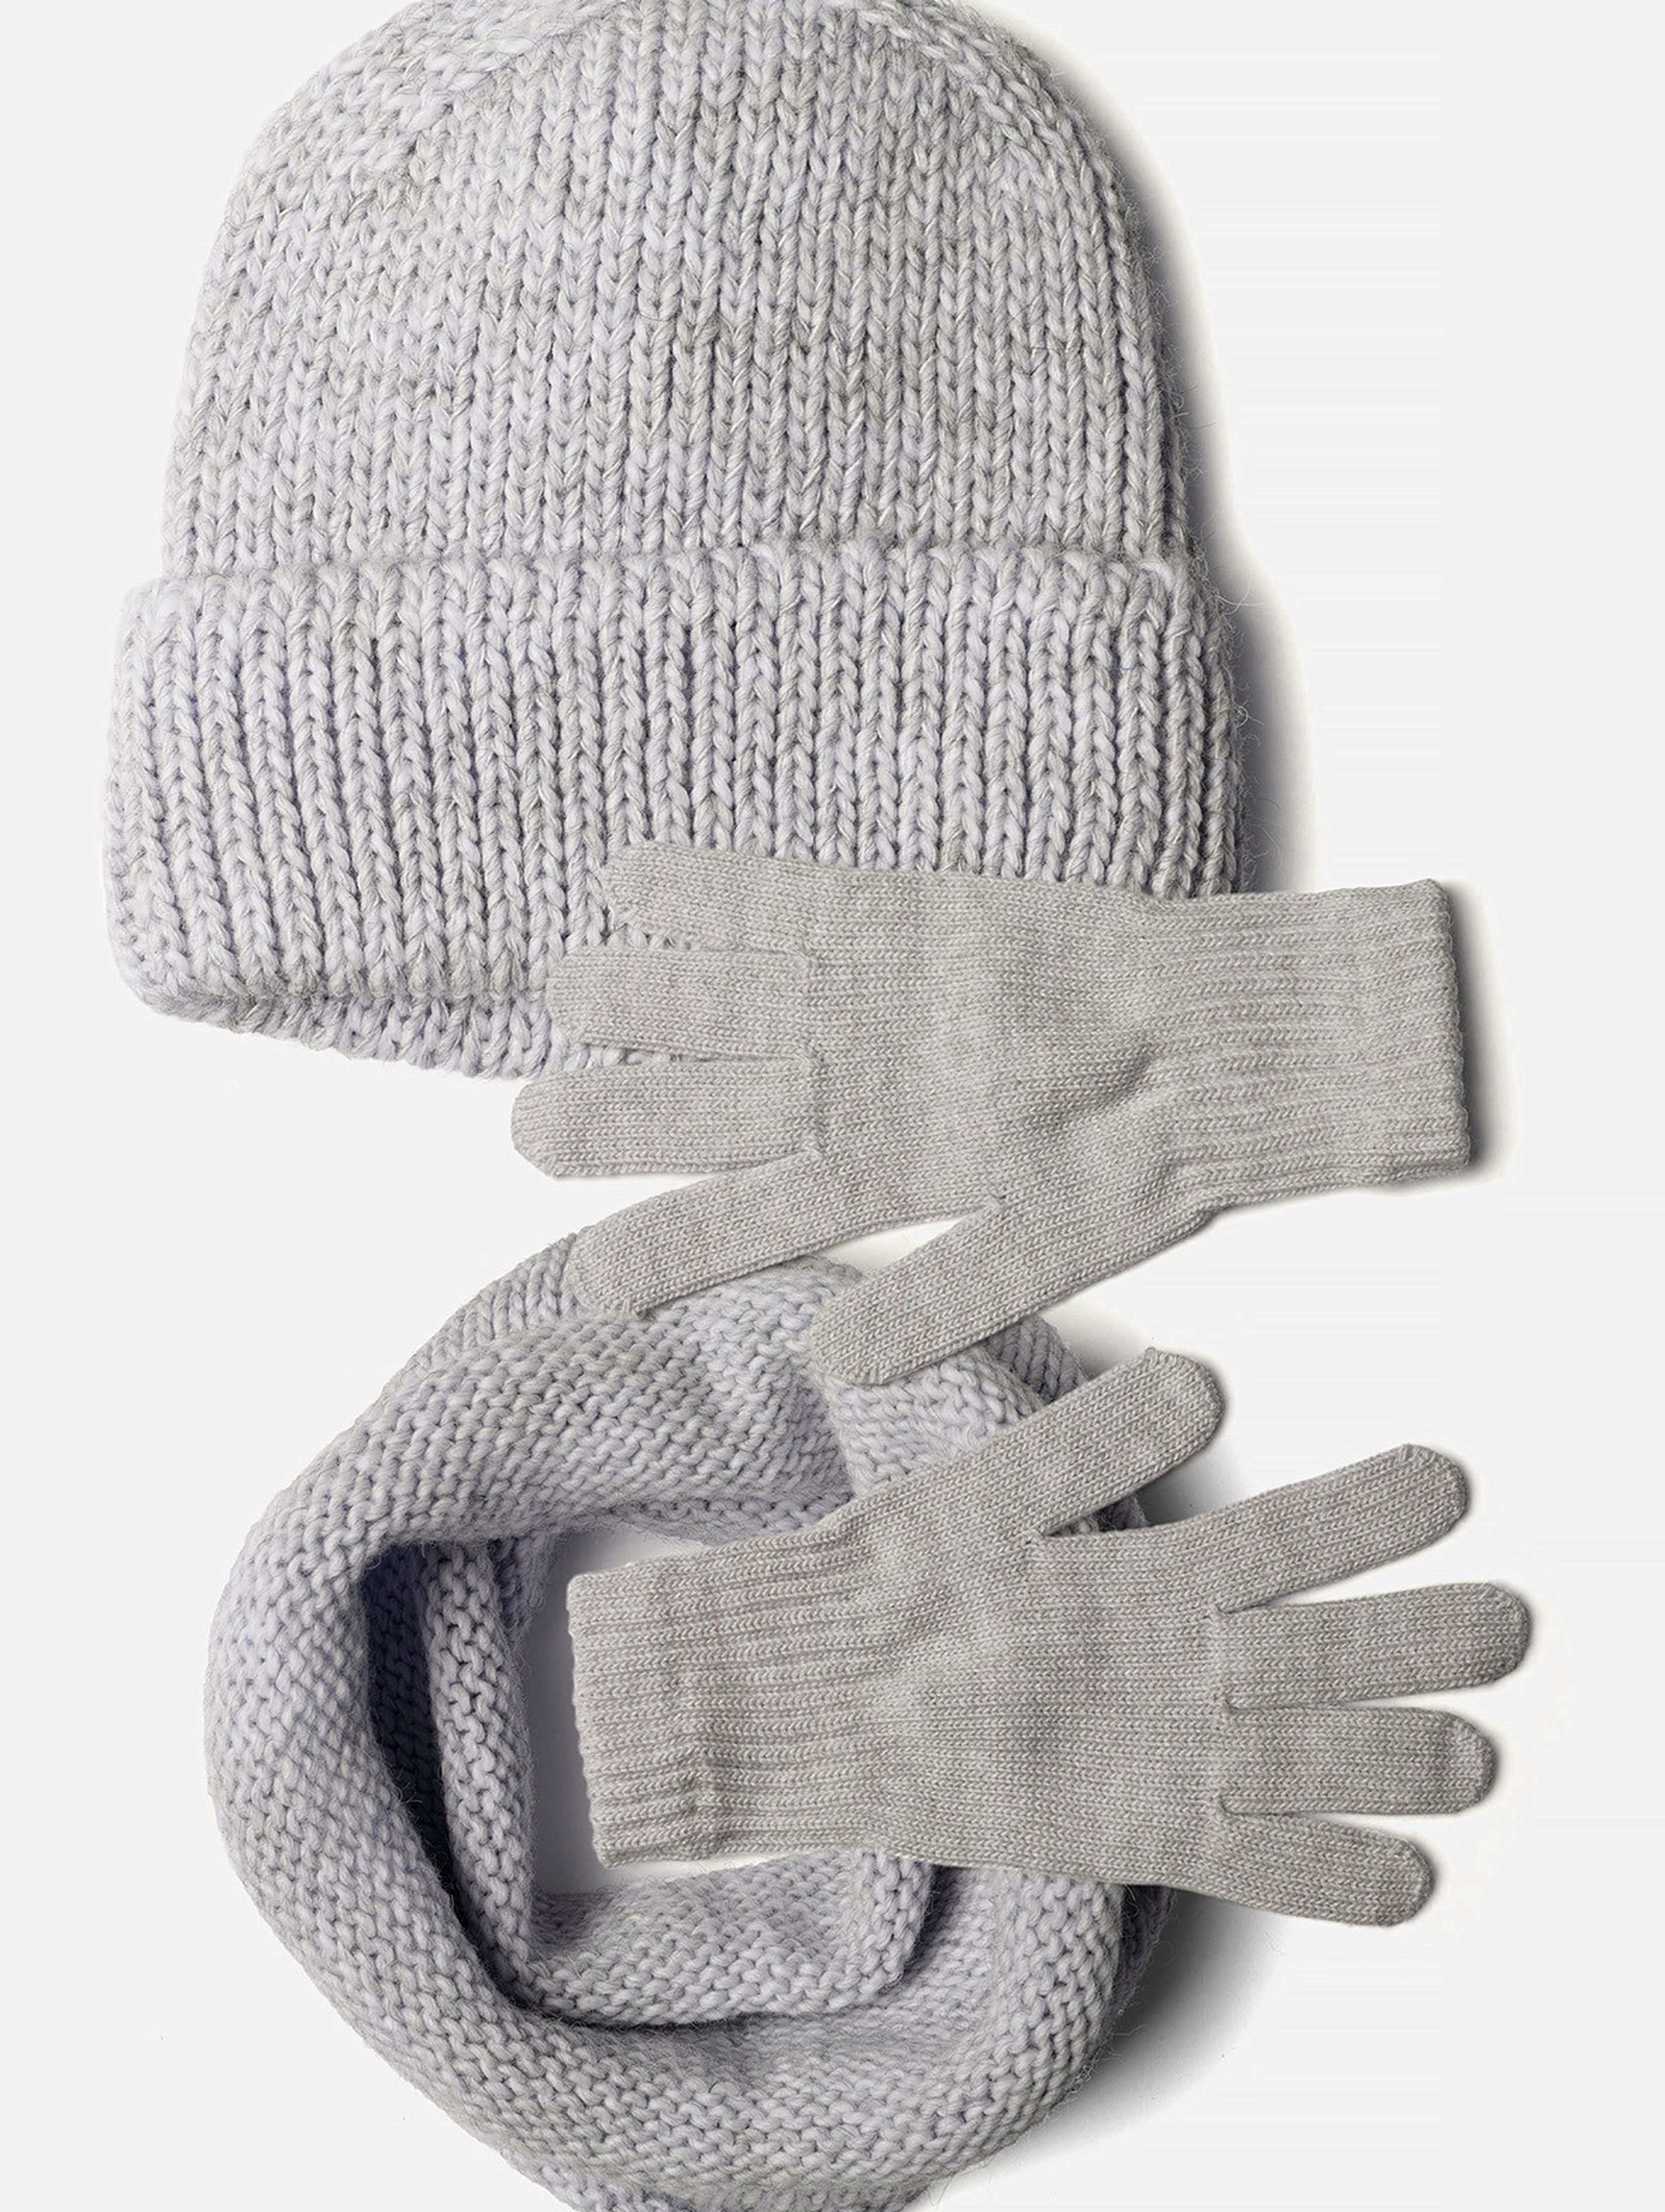 Komplet zimowy damski- czapka, komin, rękawiczki